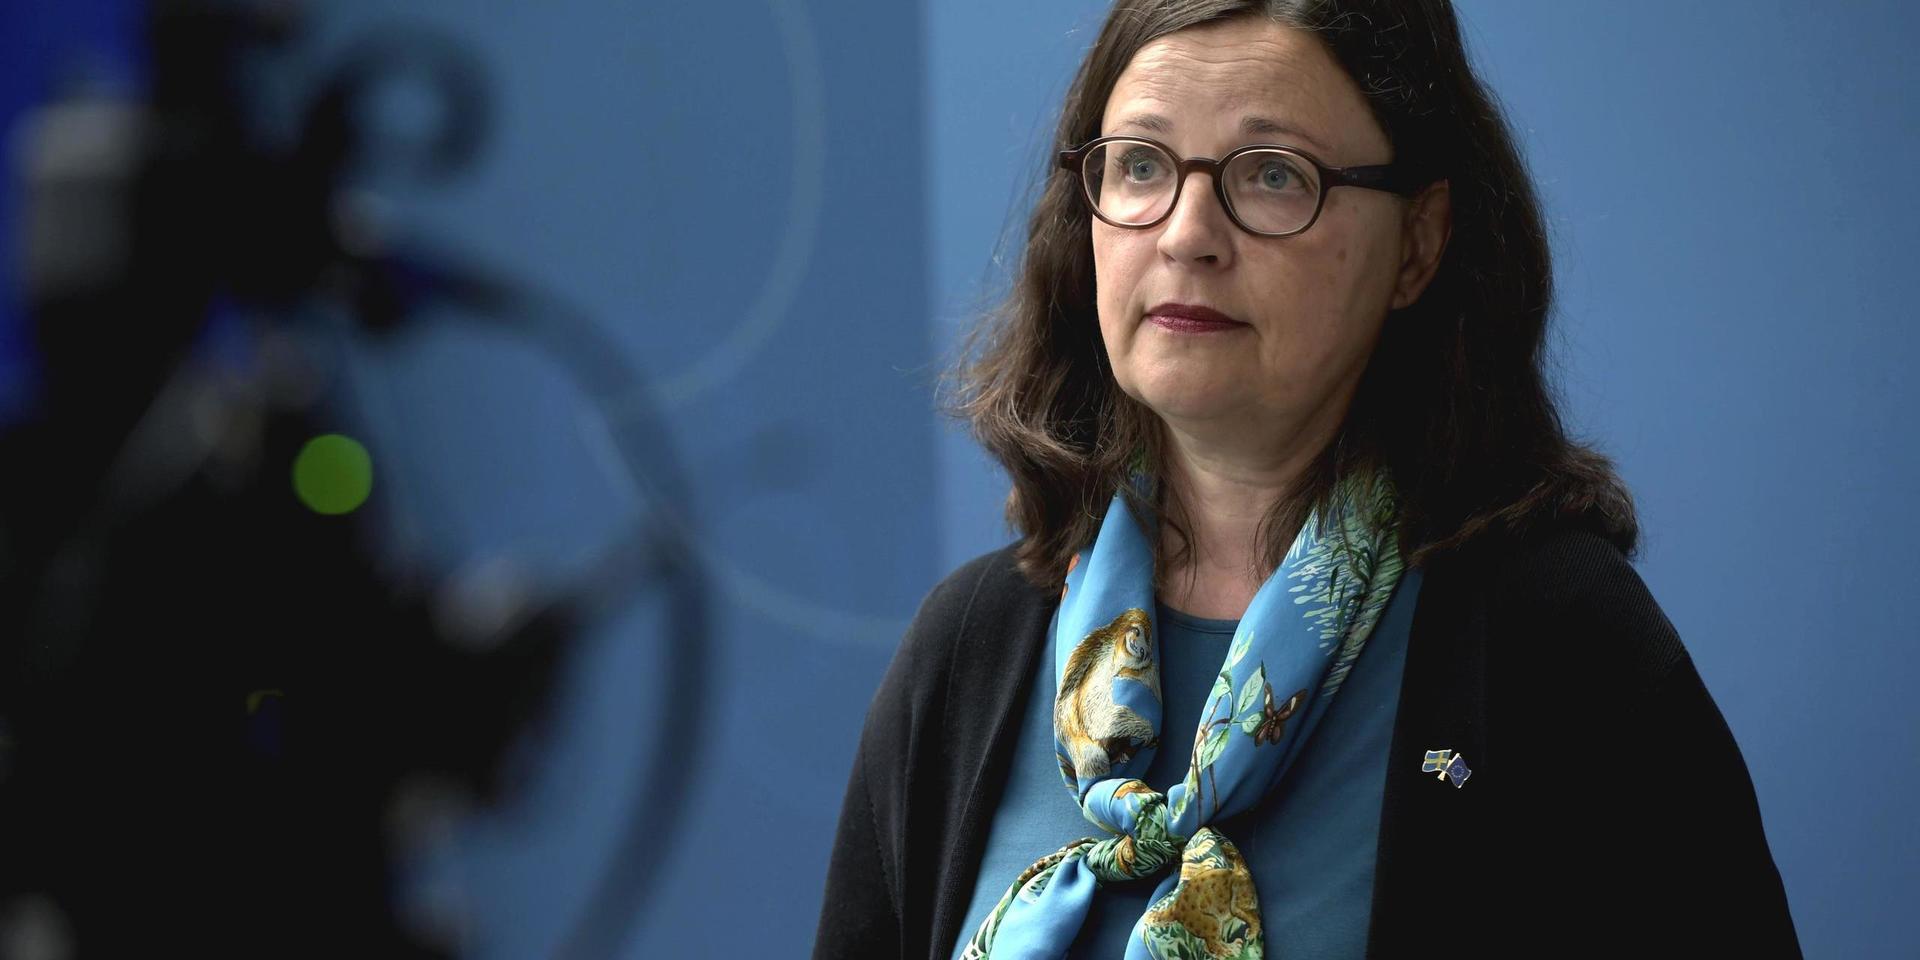 Utbildningsminister Anna Ekström reagerar starkt över Jensens införande av klädkod för sina elever.